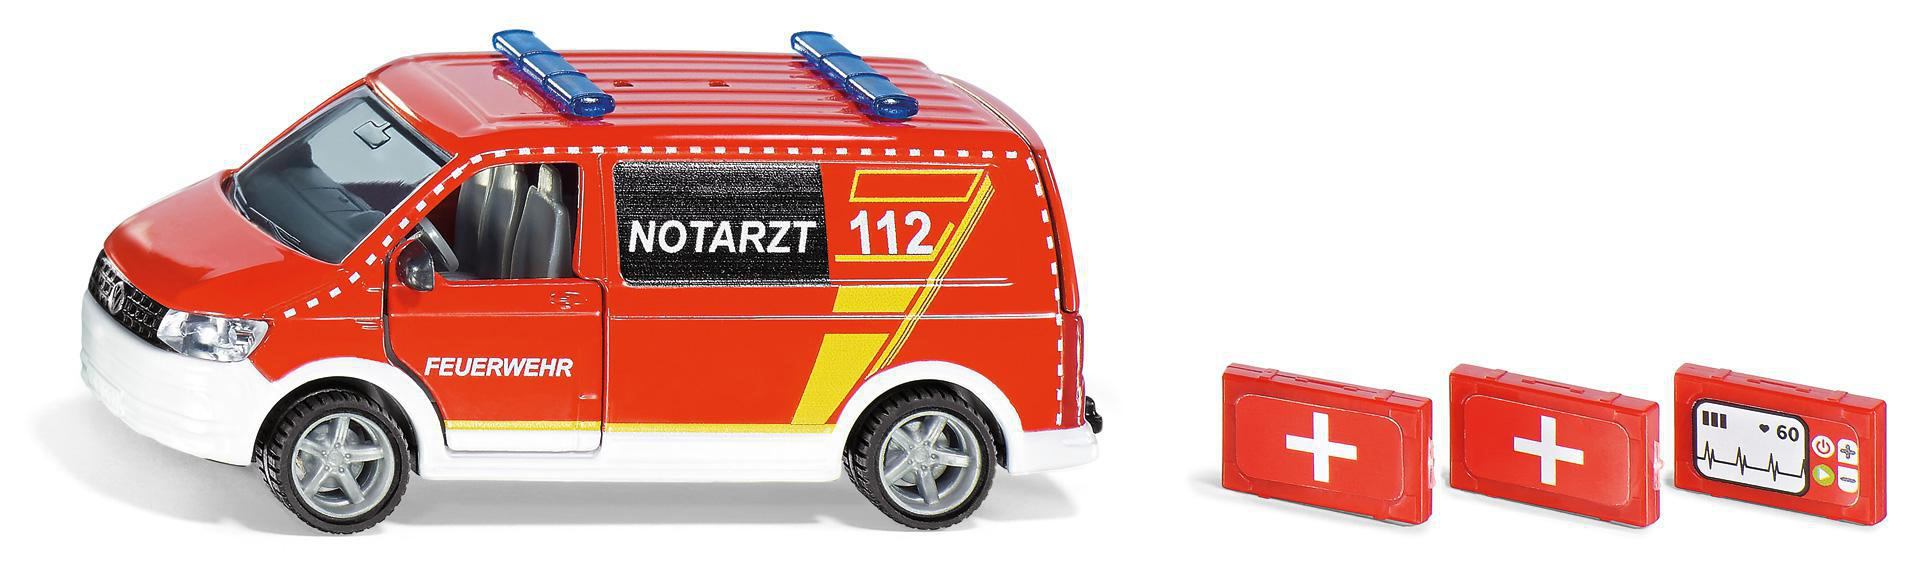 VW Notarztwagen 2116 T6 Spielzeugmodellfahrzeug, SIKU Mehrfarbig